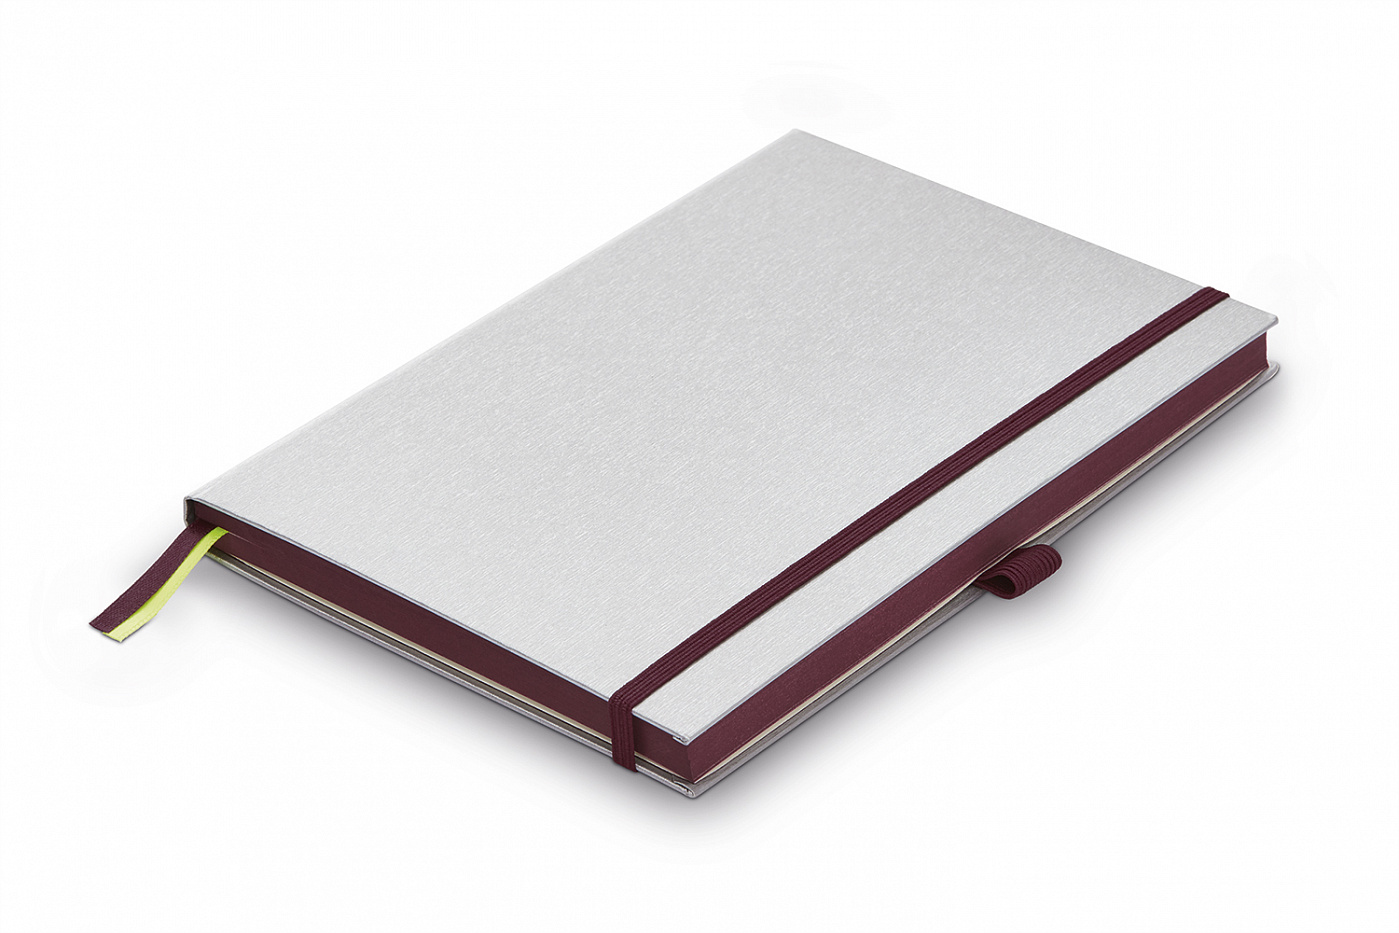 Записная книжка LAMY А6 192 стр, жесткая обложка серебристого цвета, обрез пурпурный семечки записная книжка константина вагинова